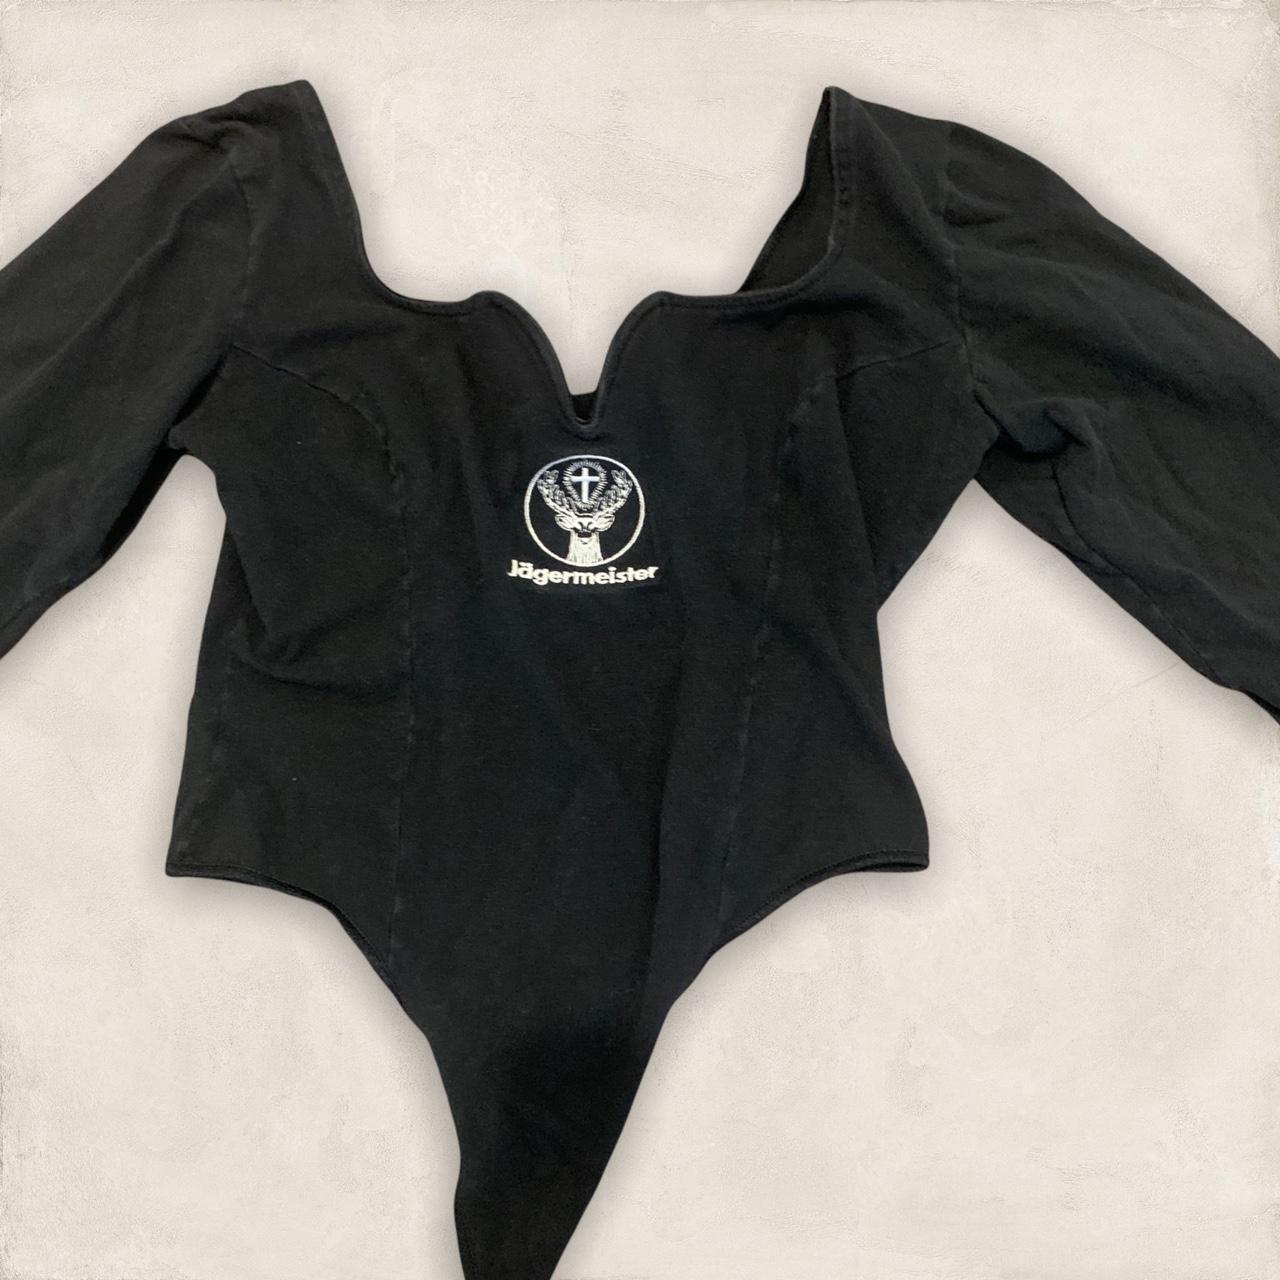 Product Image 1 - Vintage Jägermeister Pleated Bodysuit 
Measurements: